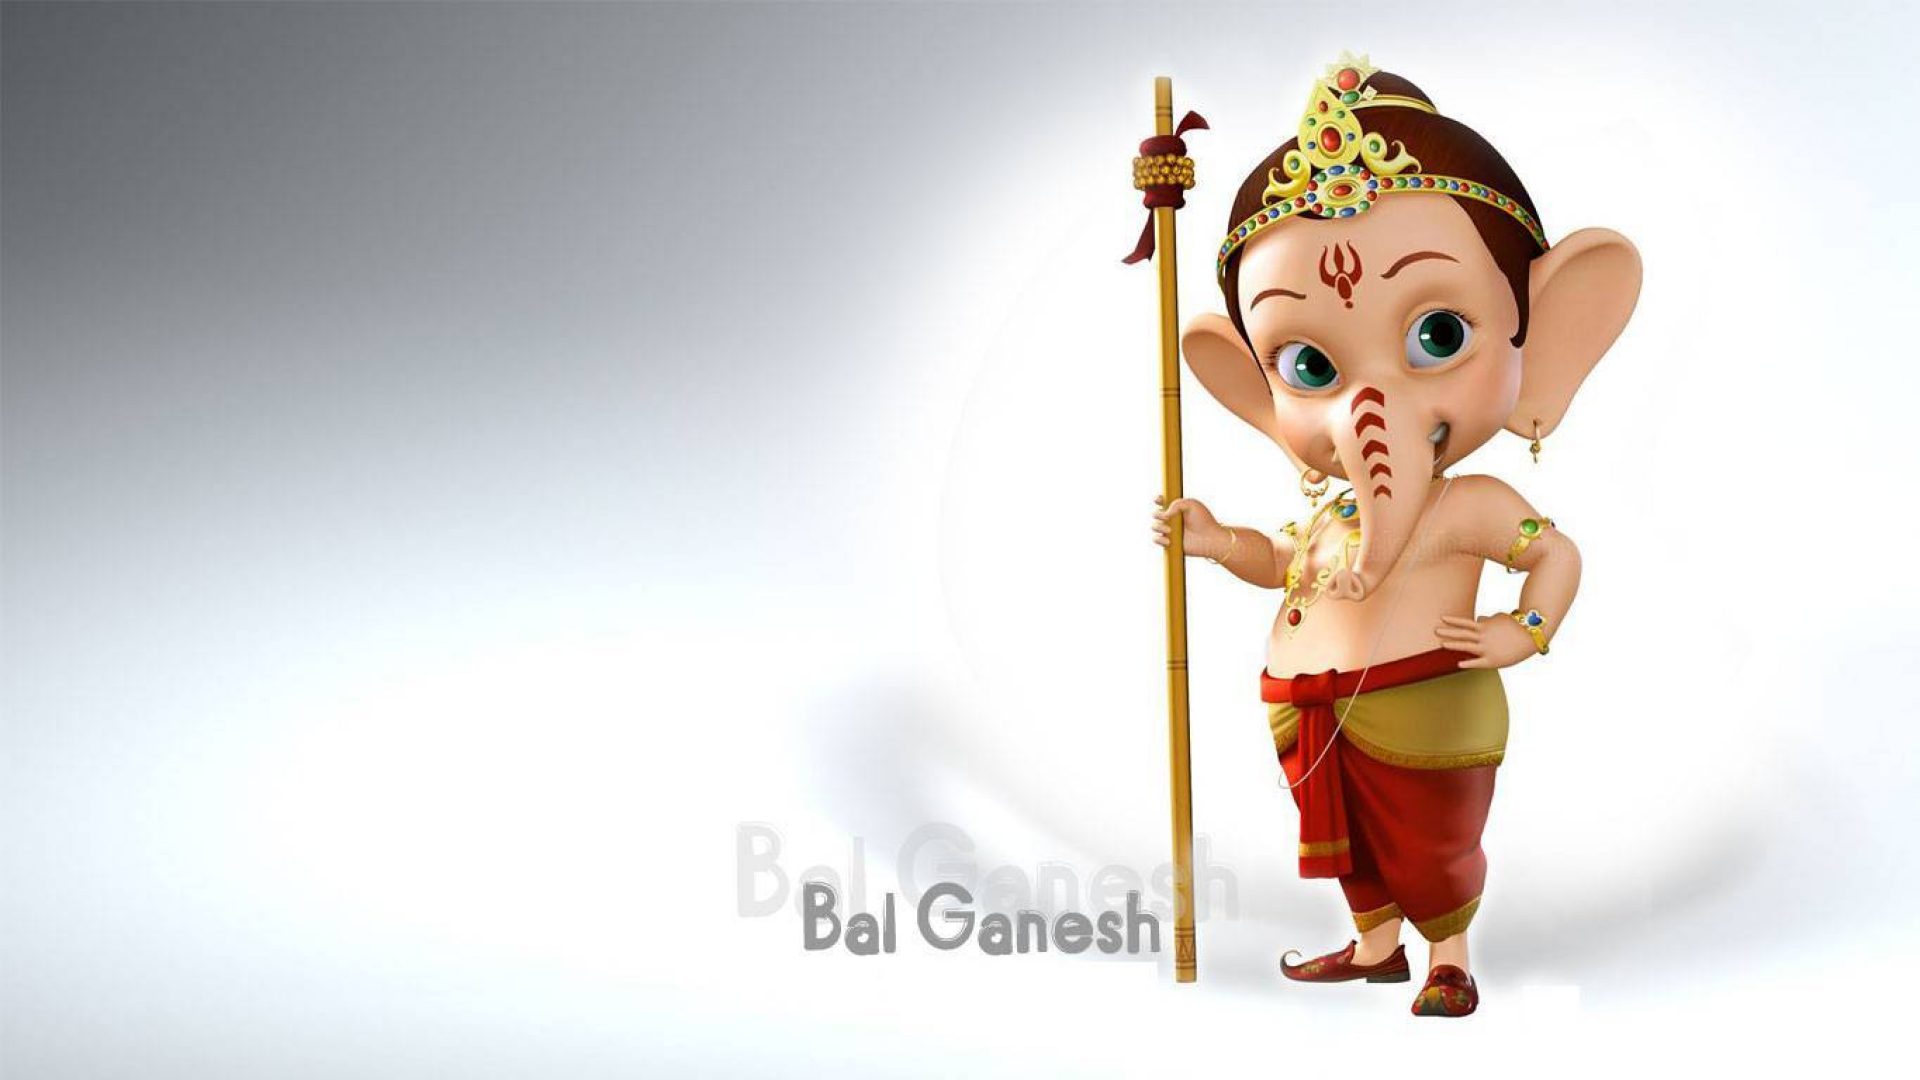 Little Bal Ganesh 3d Hd Wallpaper 1366 768 Hindu Gods And Goddesses